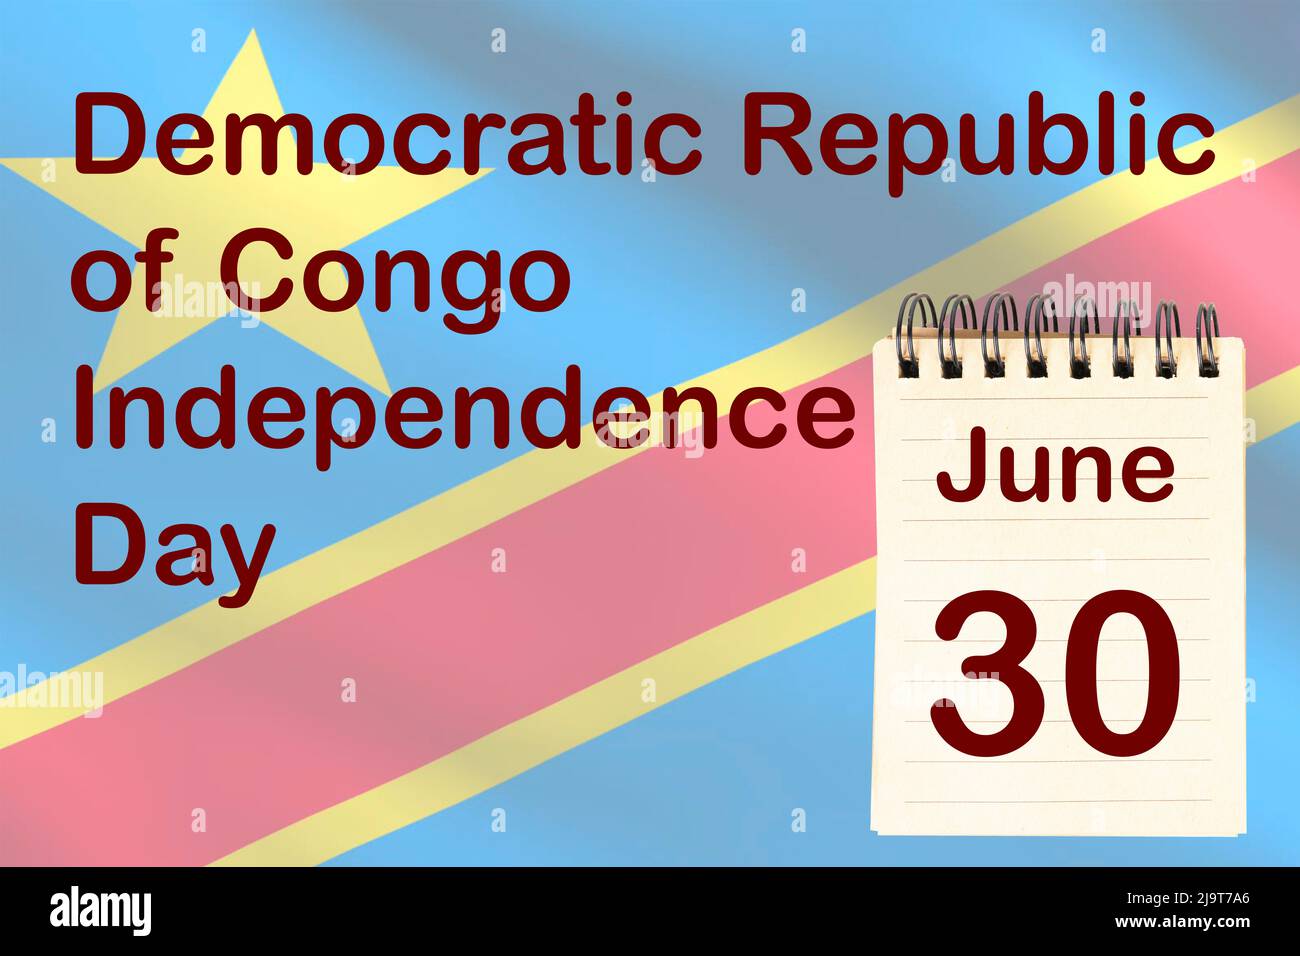 La celebración del Día de la Independencia de la República Democrática del Congo con la bandera y el calendario que indica el 30 de junio Foto de stock